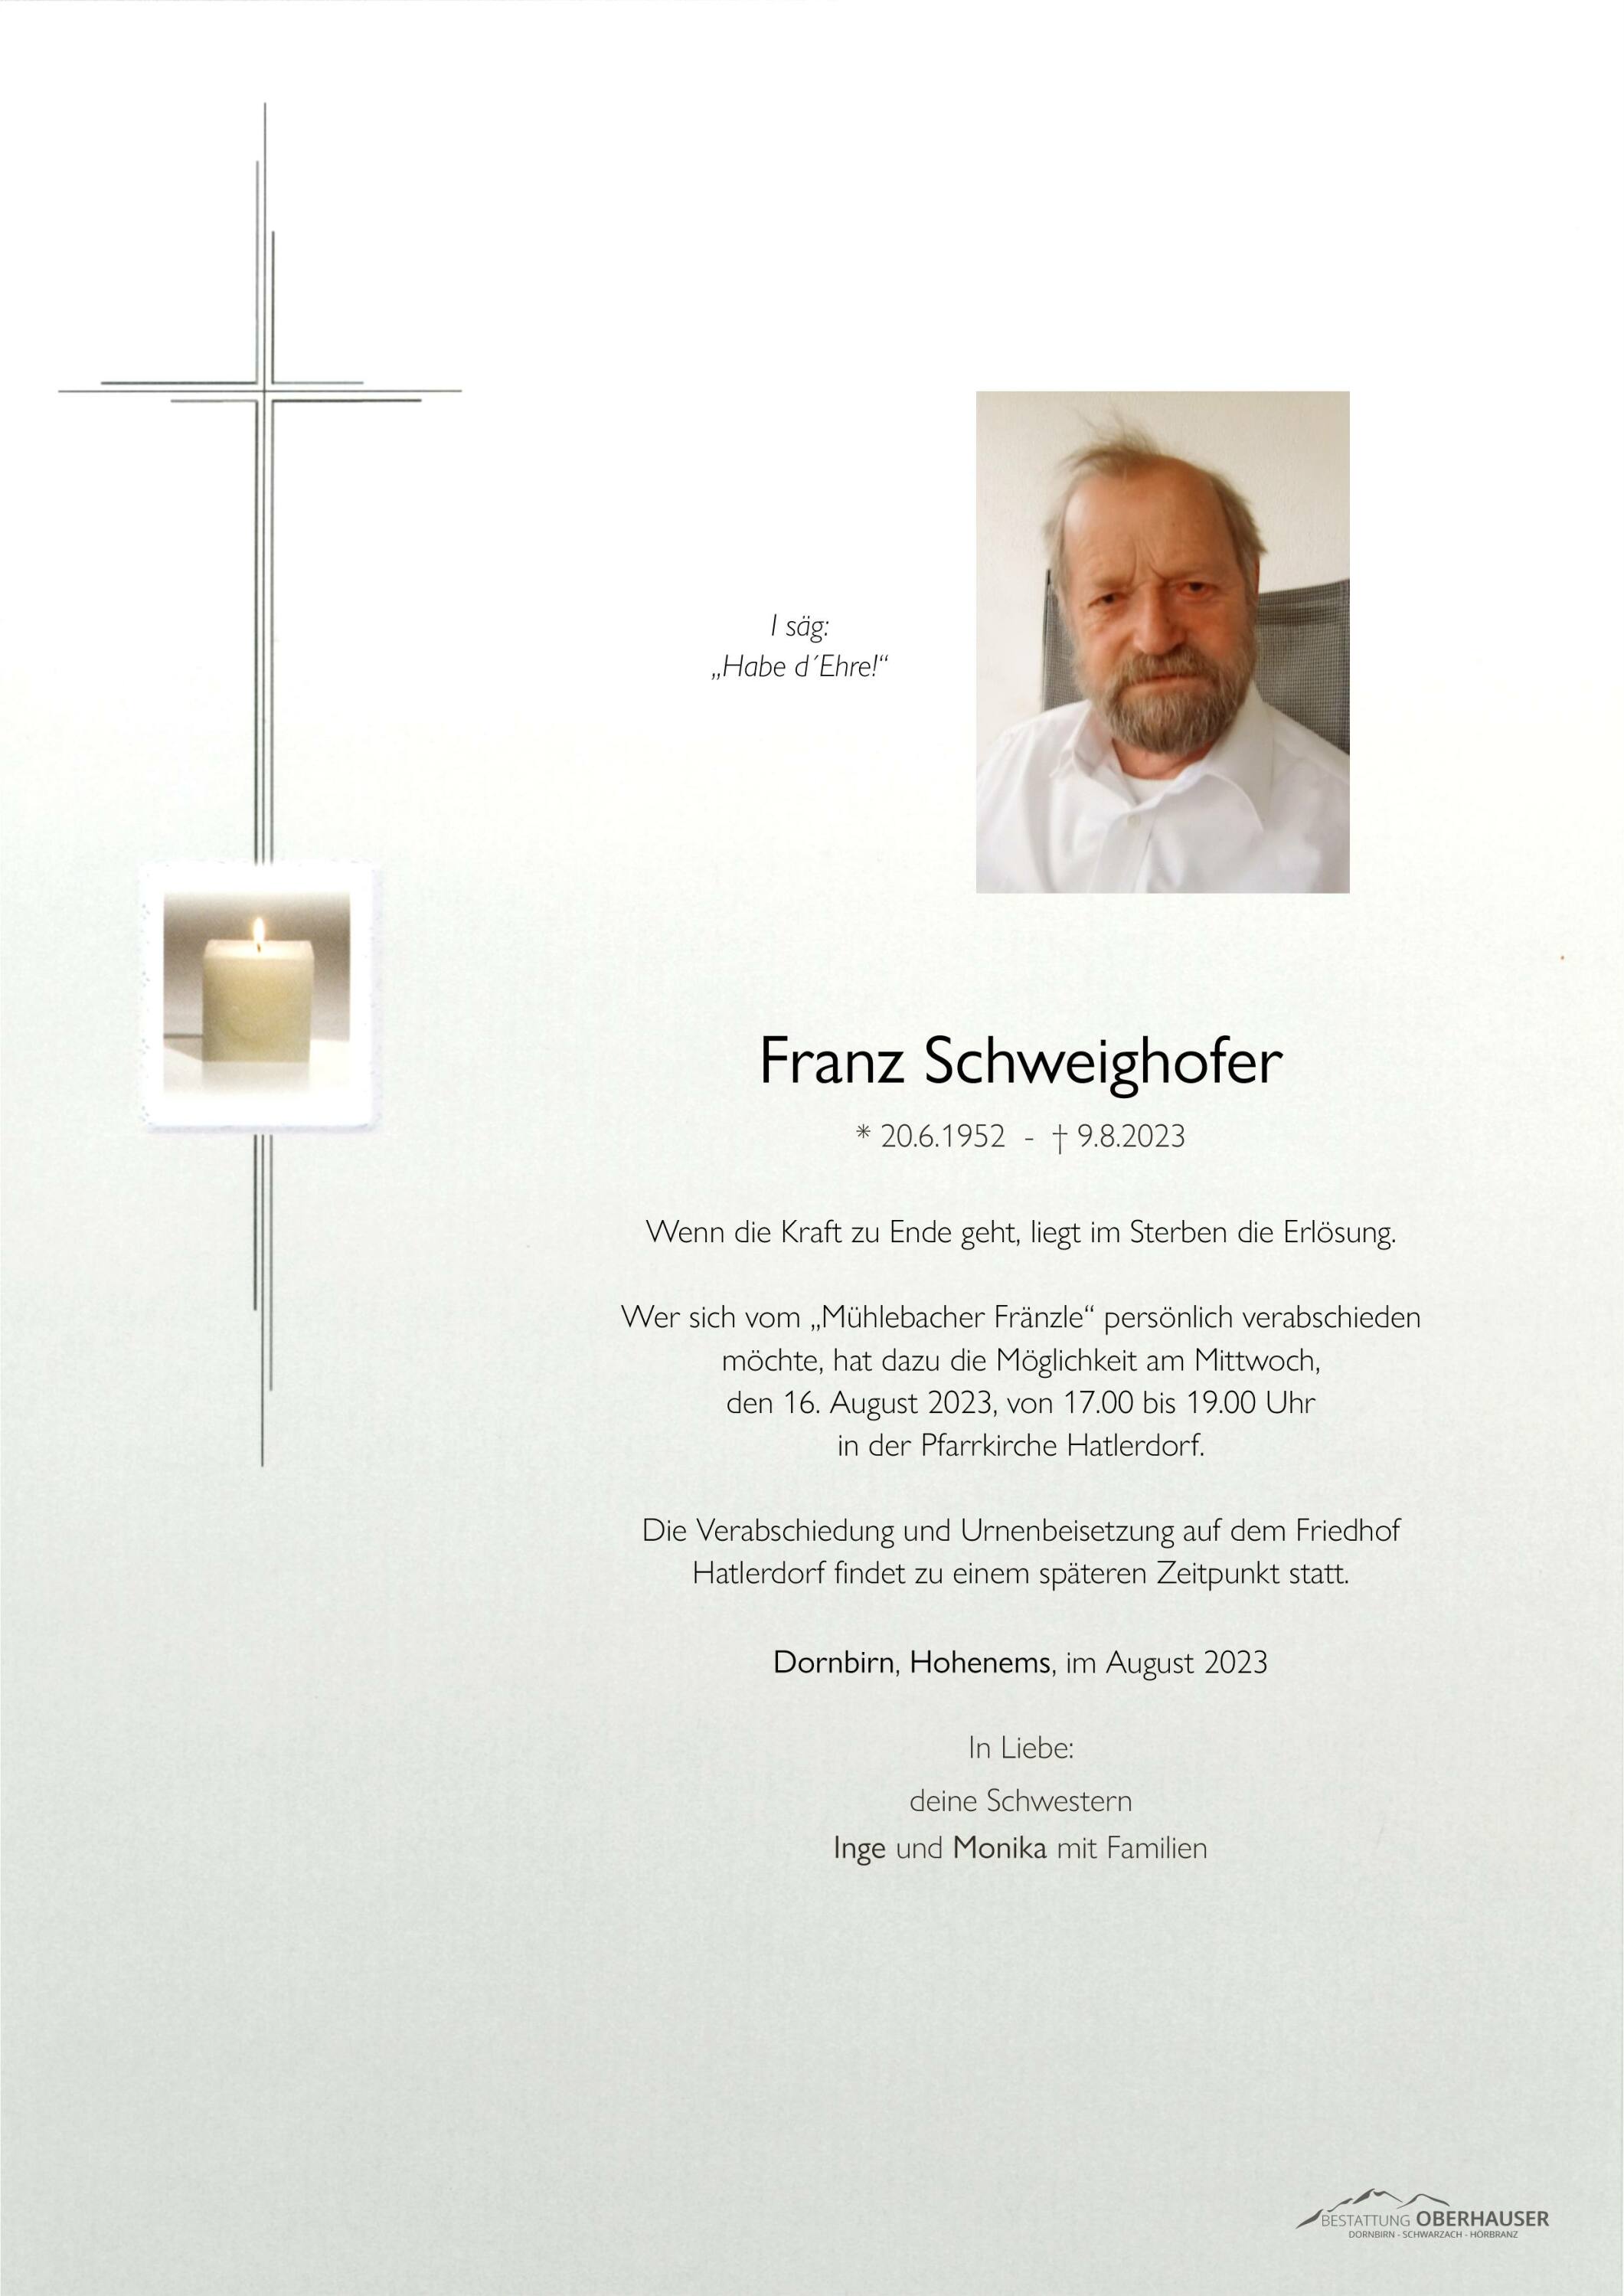 Franz Schweighofer